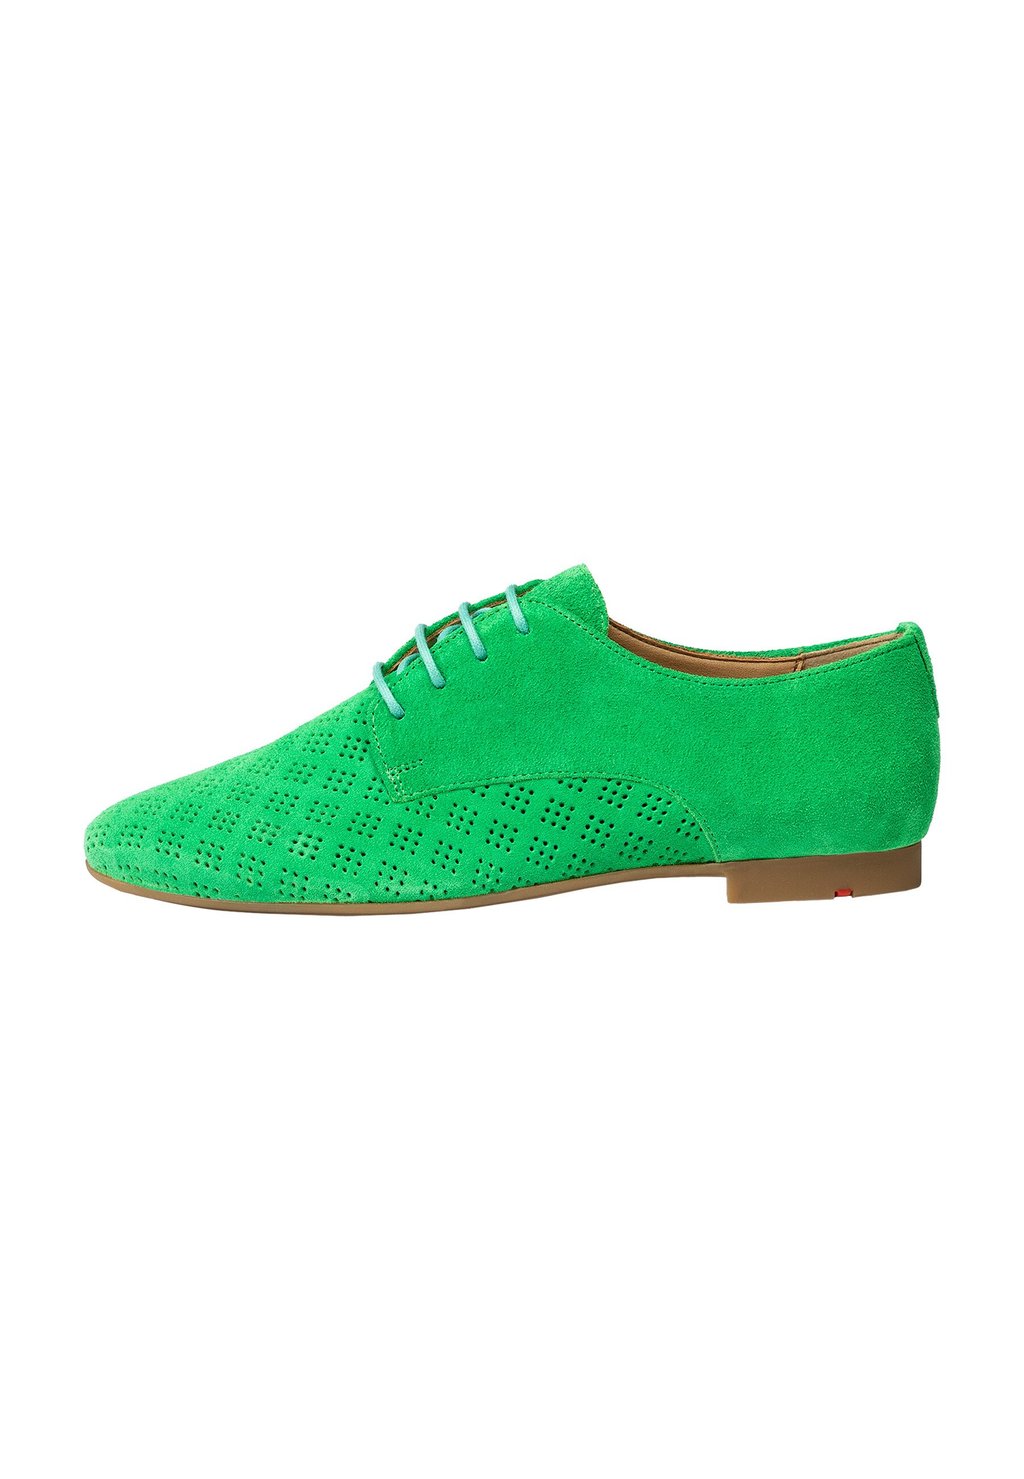 Ботинки на шнуровке Moderner Lloyd, зеленый